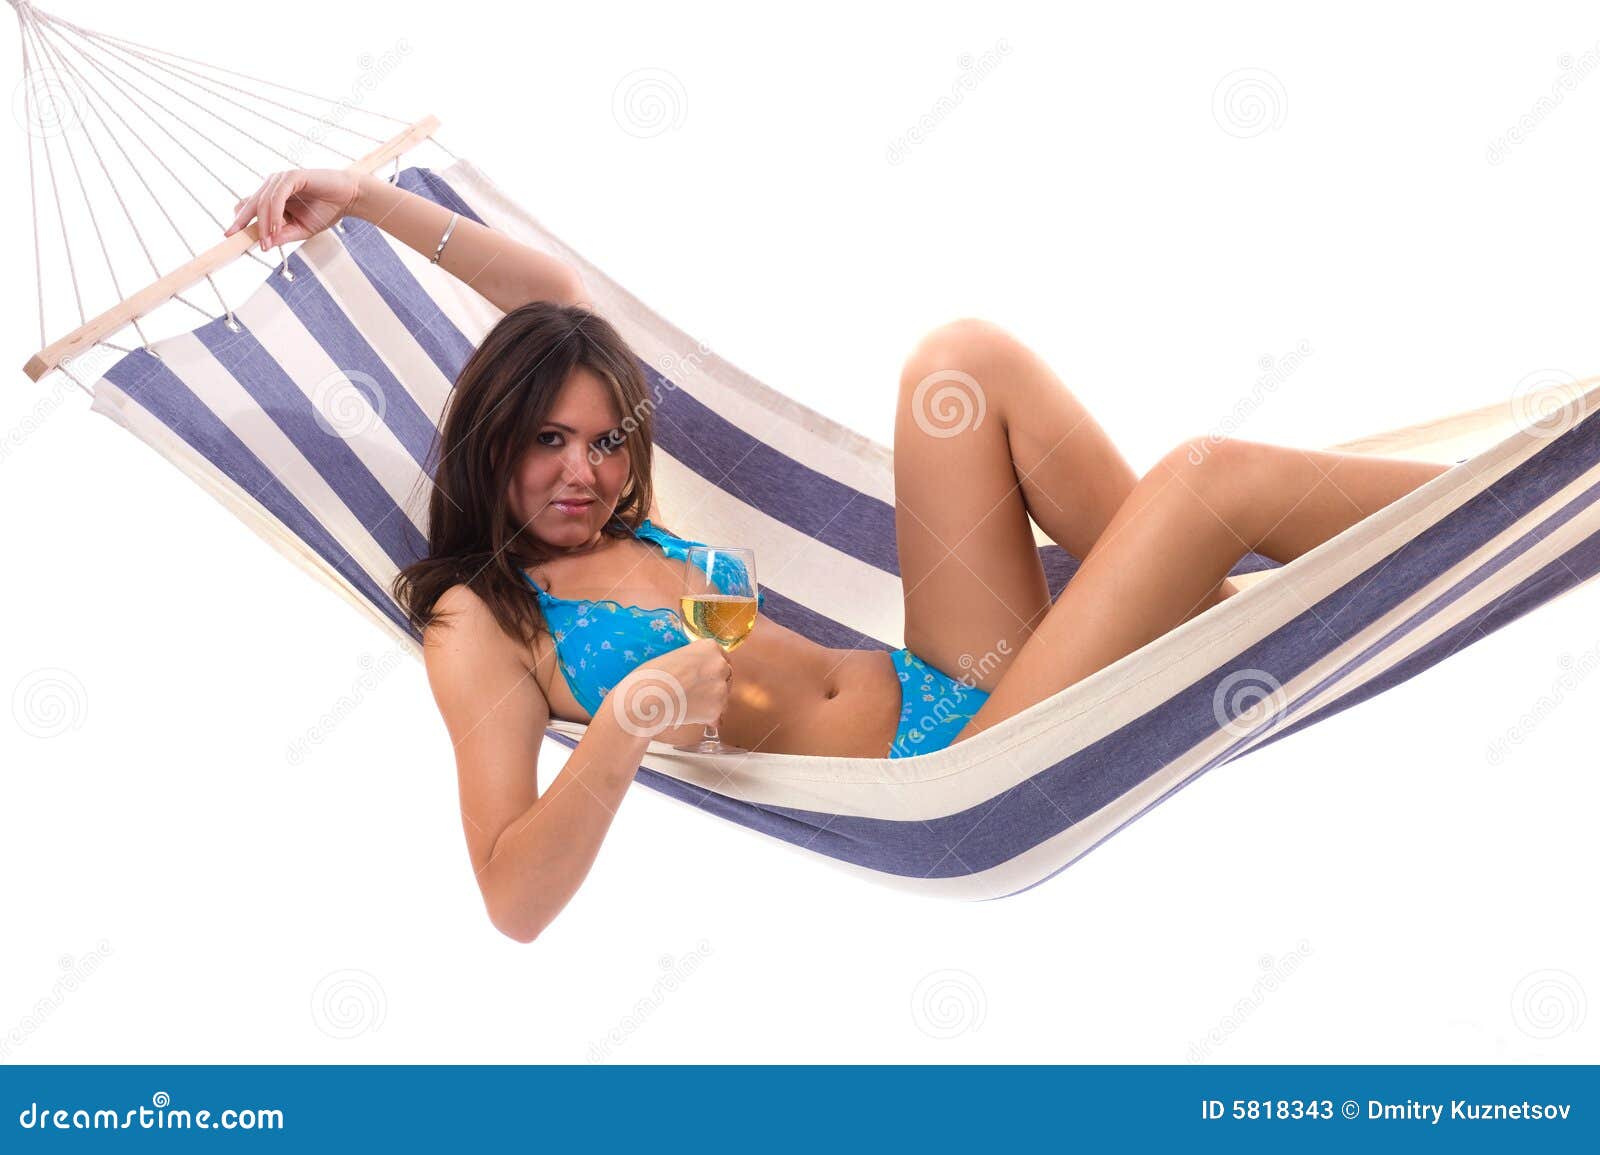 Tragender Bikini der reizvollen Frau entspannen sich auf Hängematte. Tragender Bikini der reizvollen Frau entspannen sich auf der Hängematte, die auf dem Hintergrund getrennt wird